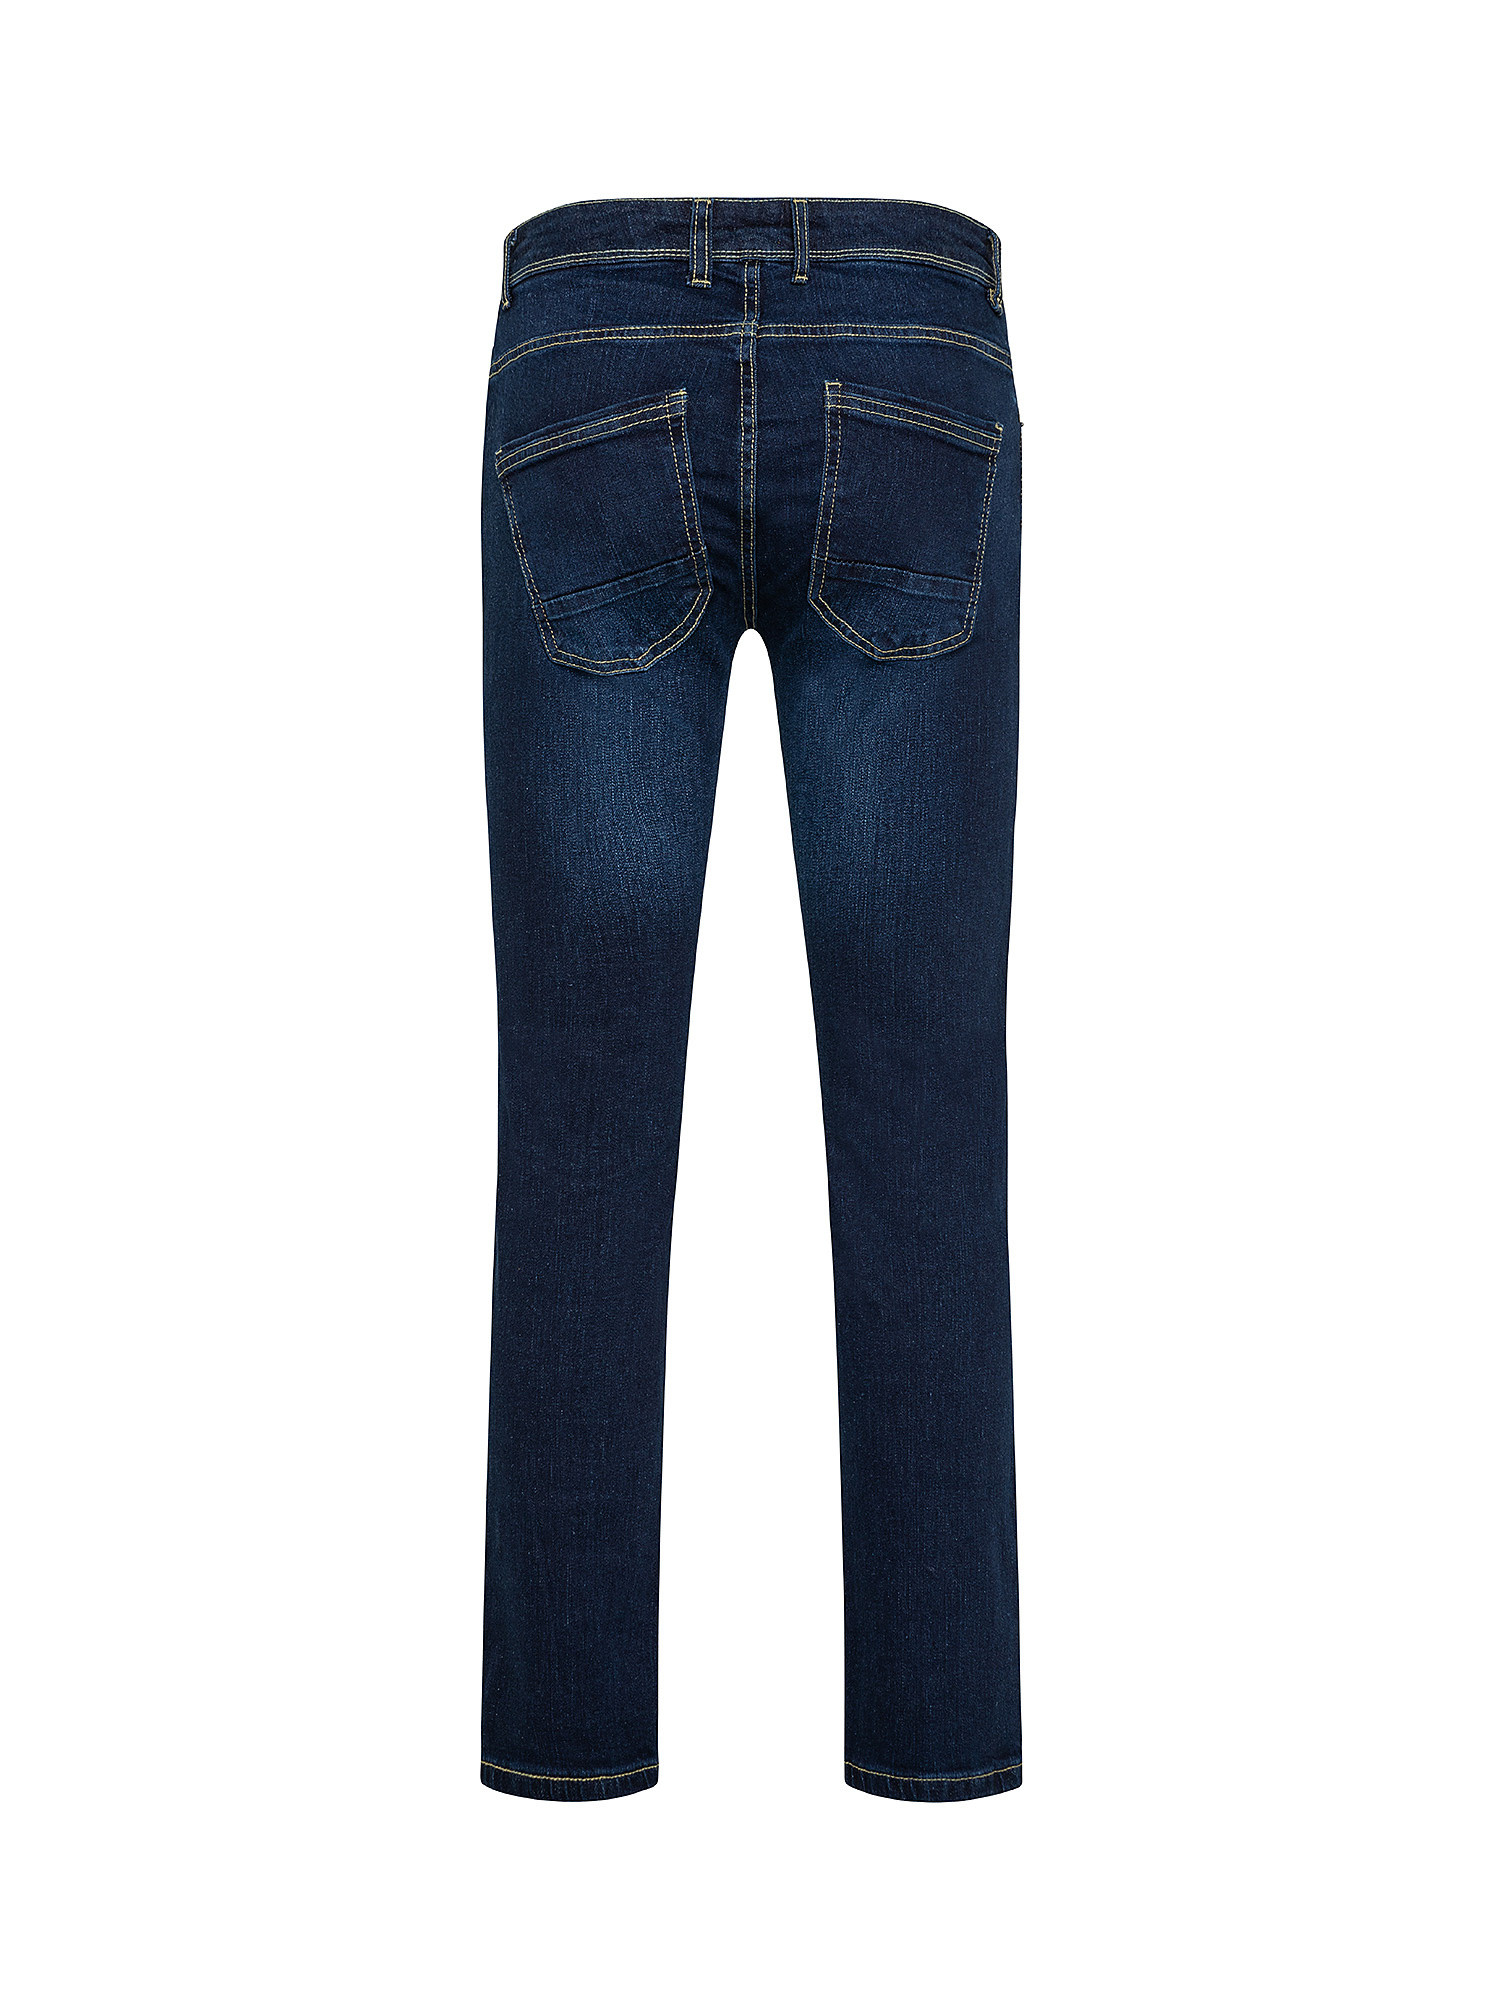 Stretch jeans, Dark Blue, large image number 1